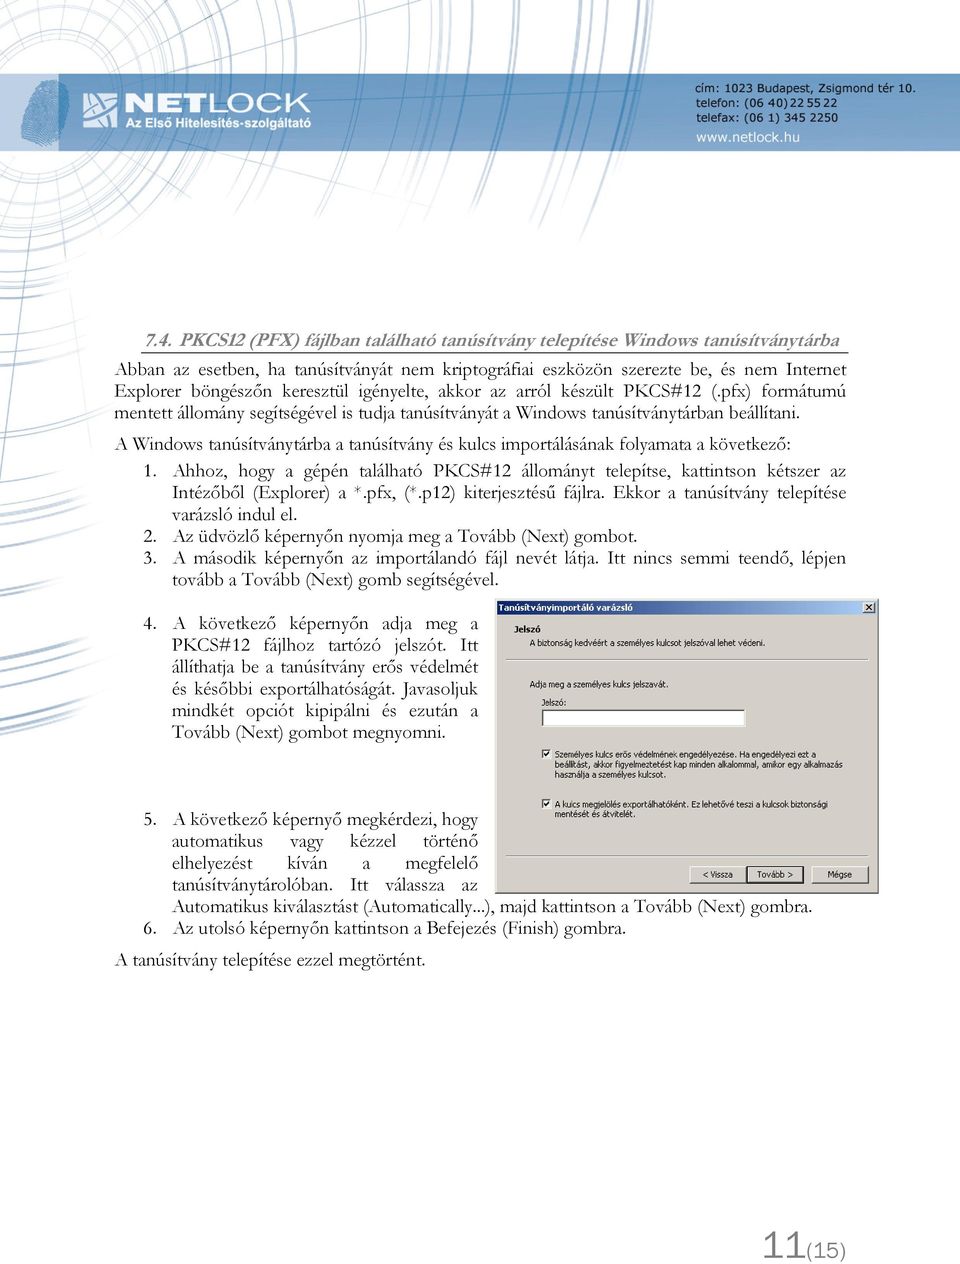 A Windows tanúsítványtárba a tanúsítvány és kulcs importálásának folyamata a következő: 1. Ahhoz, hogy a gépén található PKCS#12 állományt telepítse, kattintson kétszer az Intézőből (Explorer) a *.